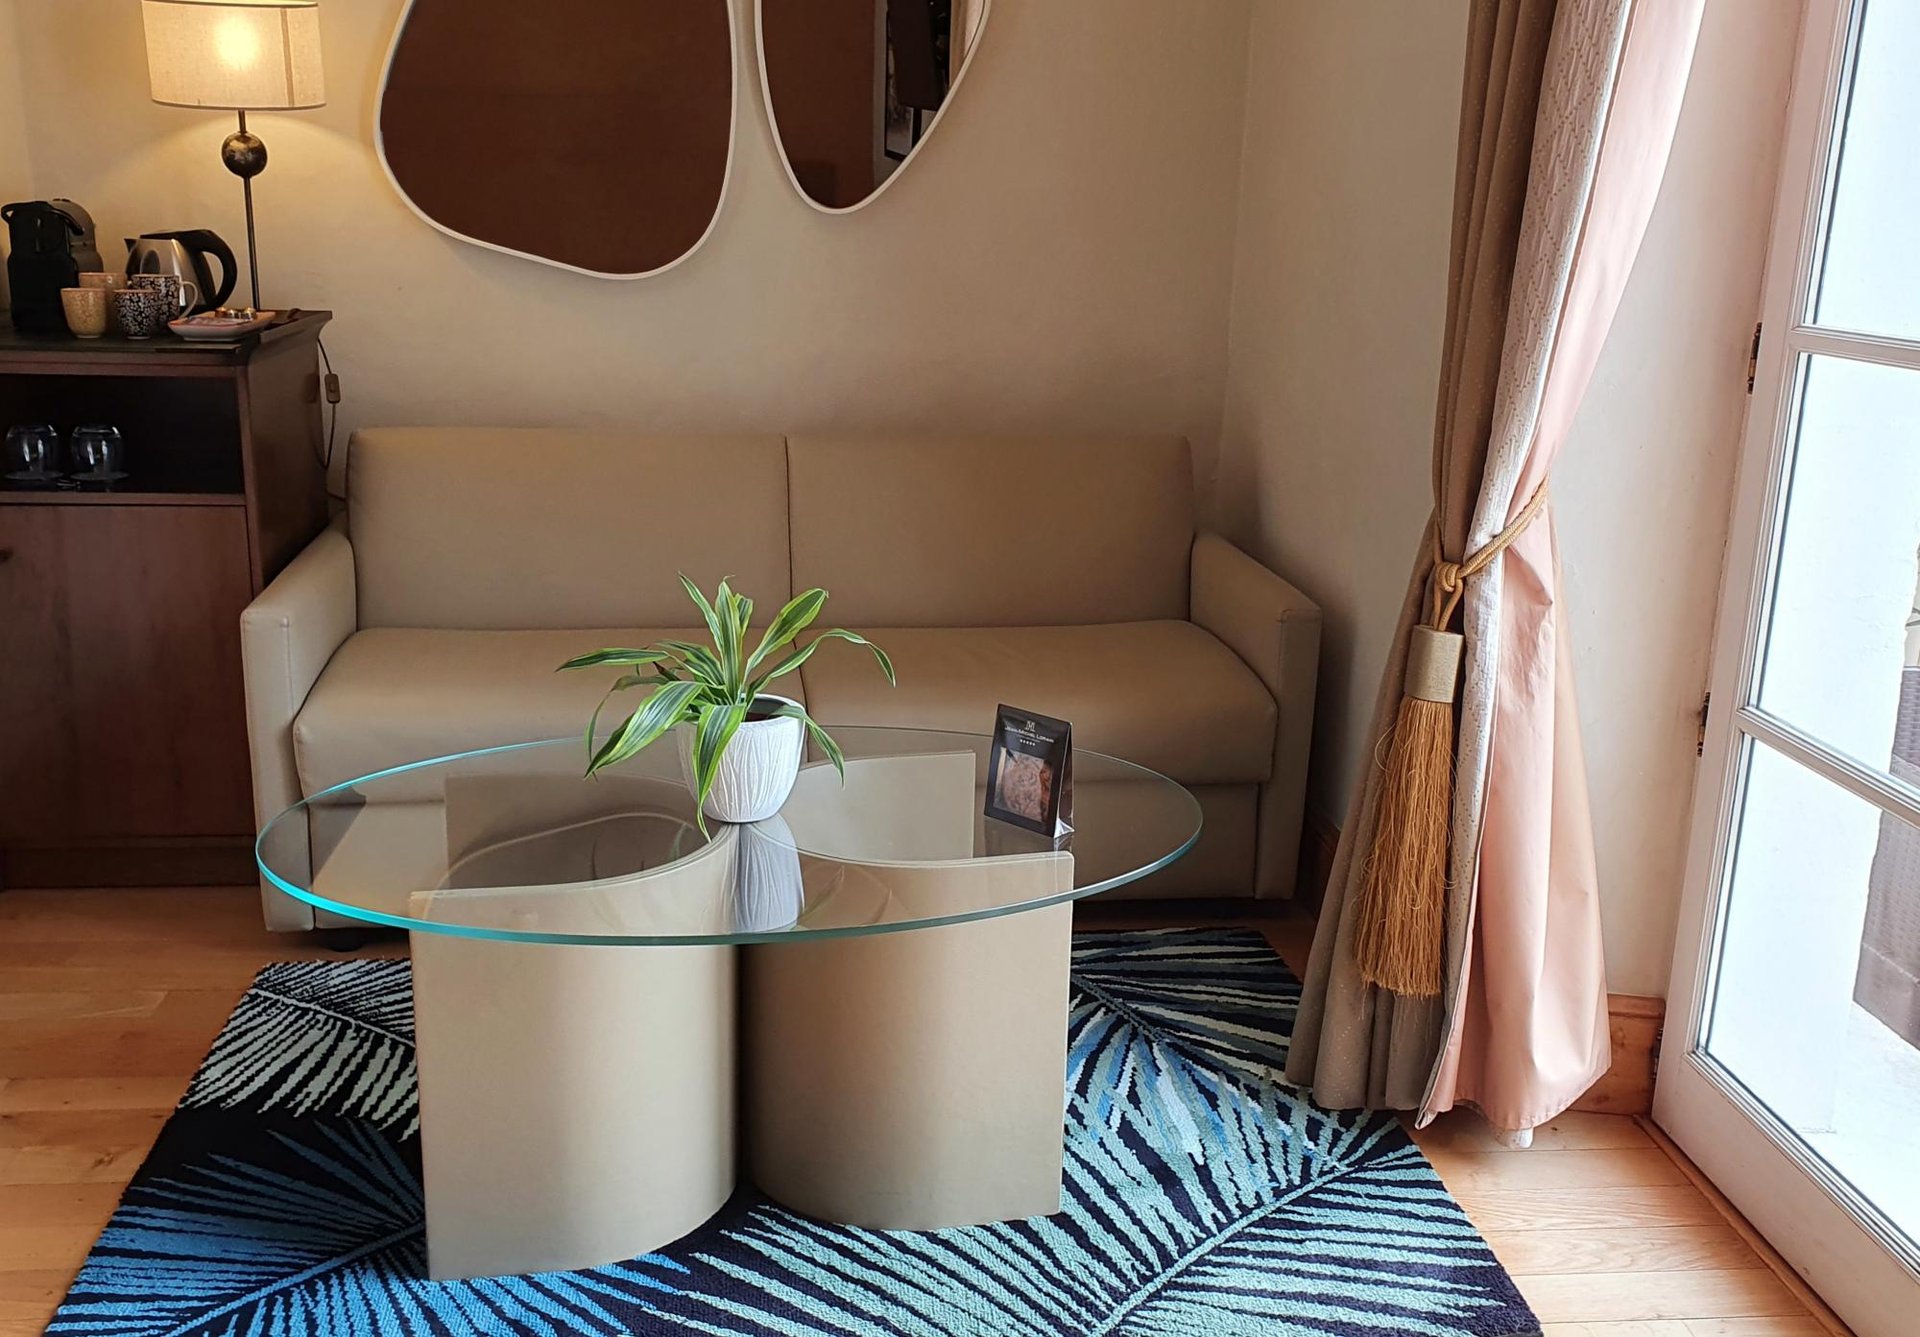 Chambre Deluxe dans notre hôtel 5 étoiles avec vue sur la rivière Yonne en Bourgogne